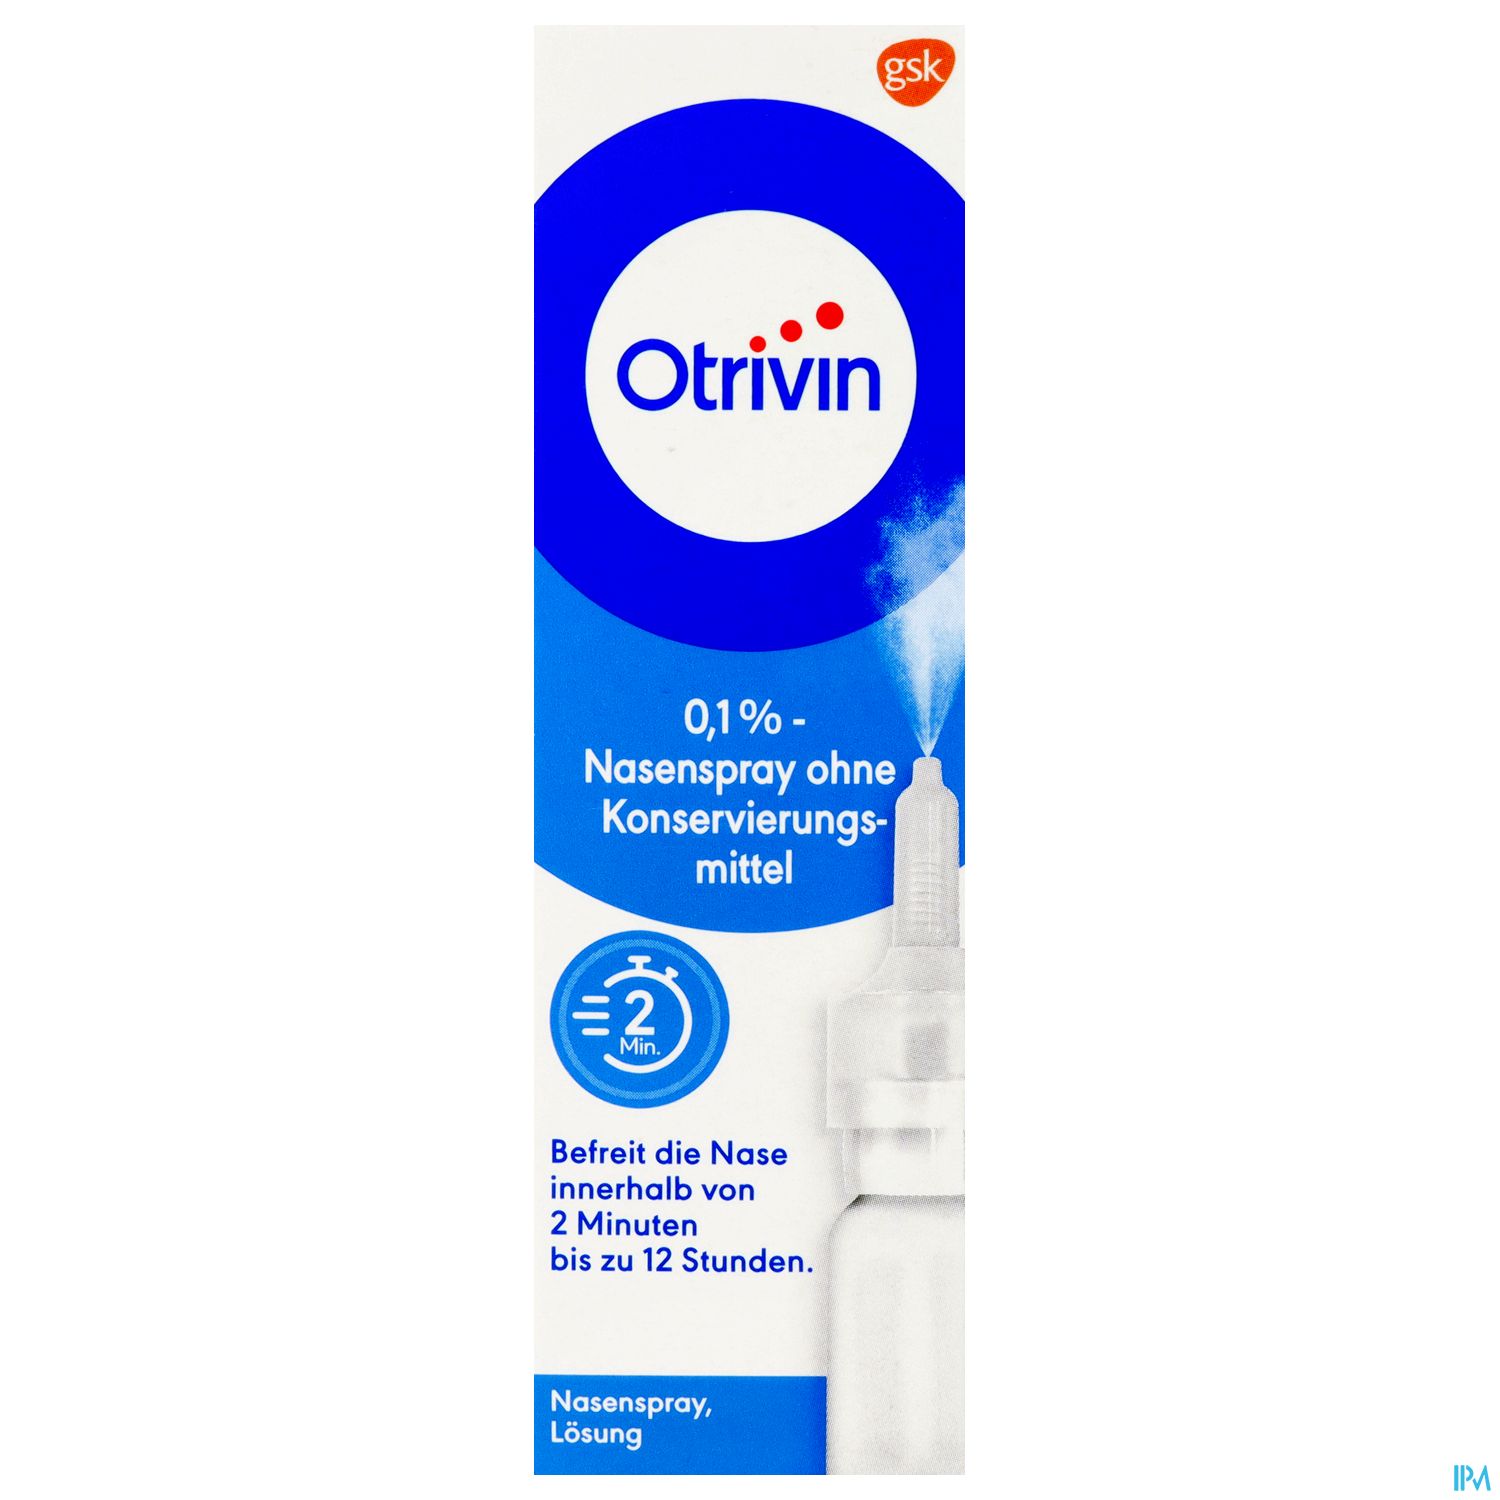 Otrivin 0,1% - Nasenspray ohne Konservierungsmittel